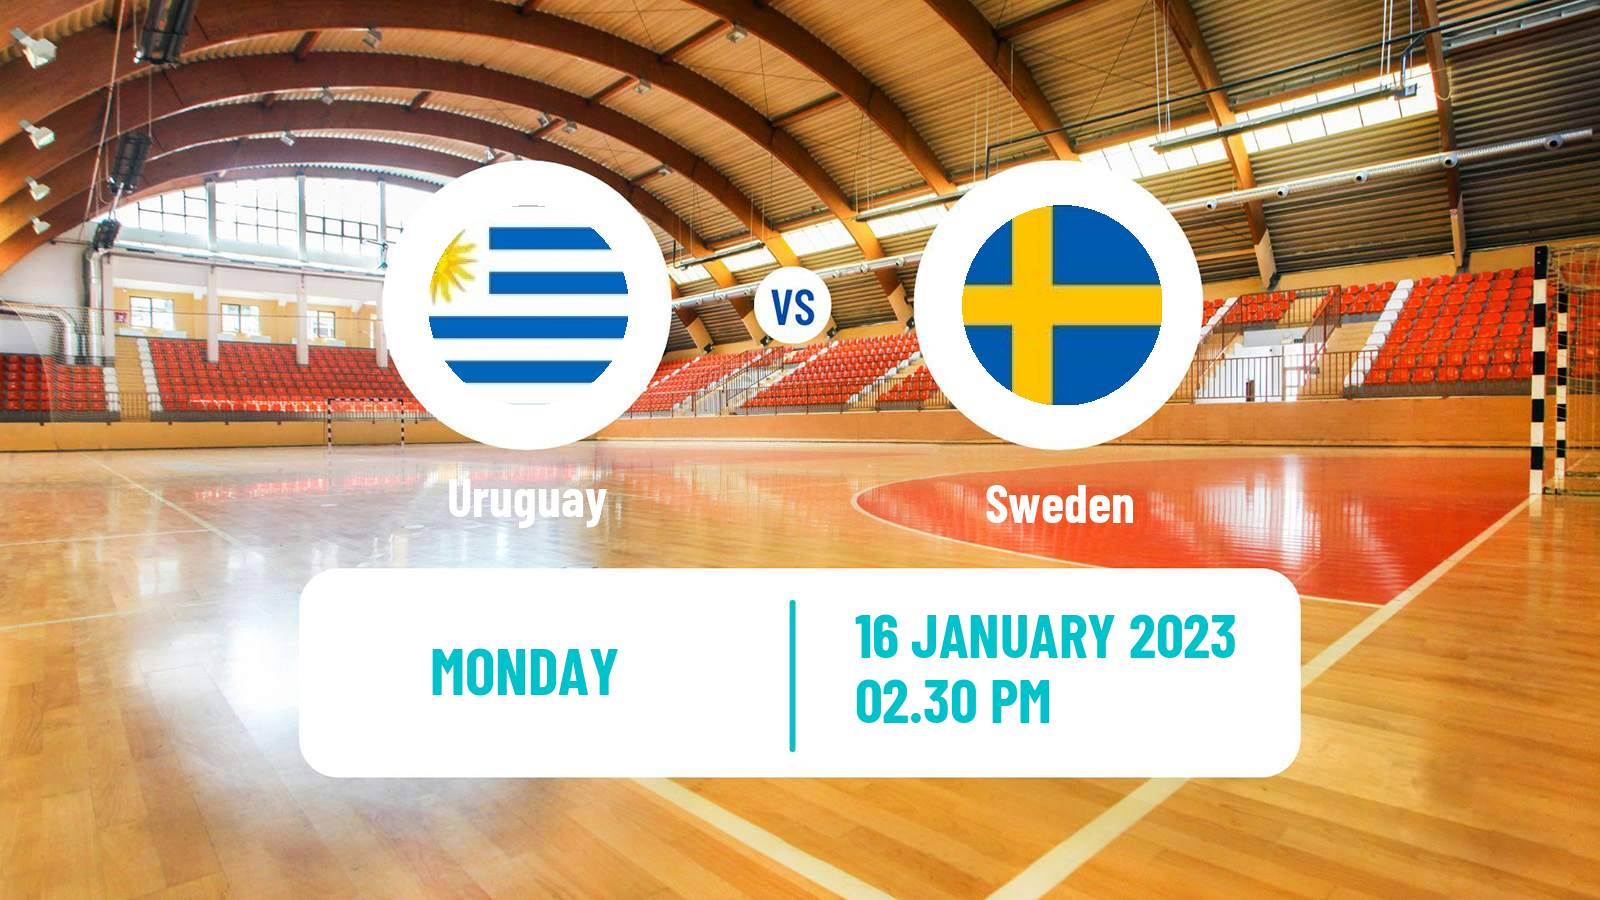 Handball Handball World Championship Uruguay - Sweden